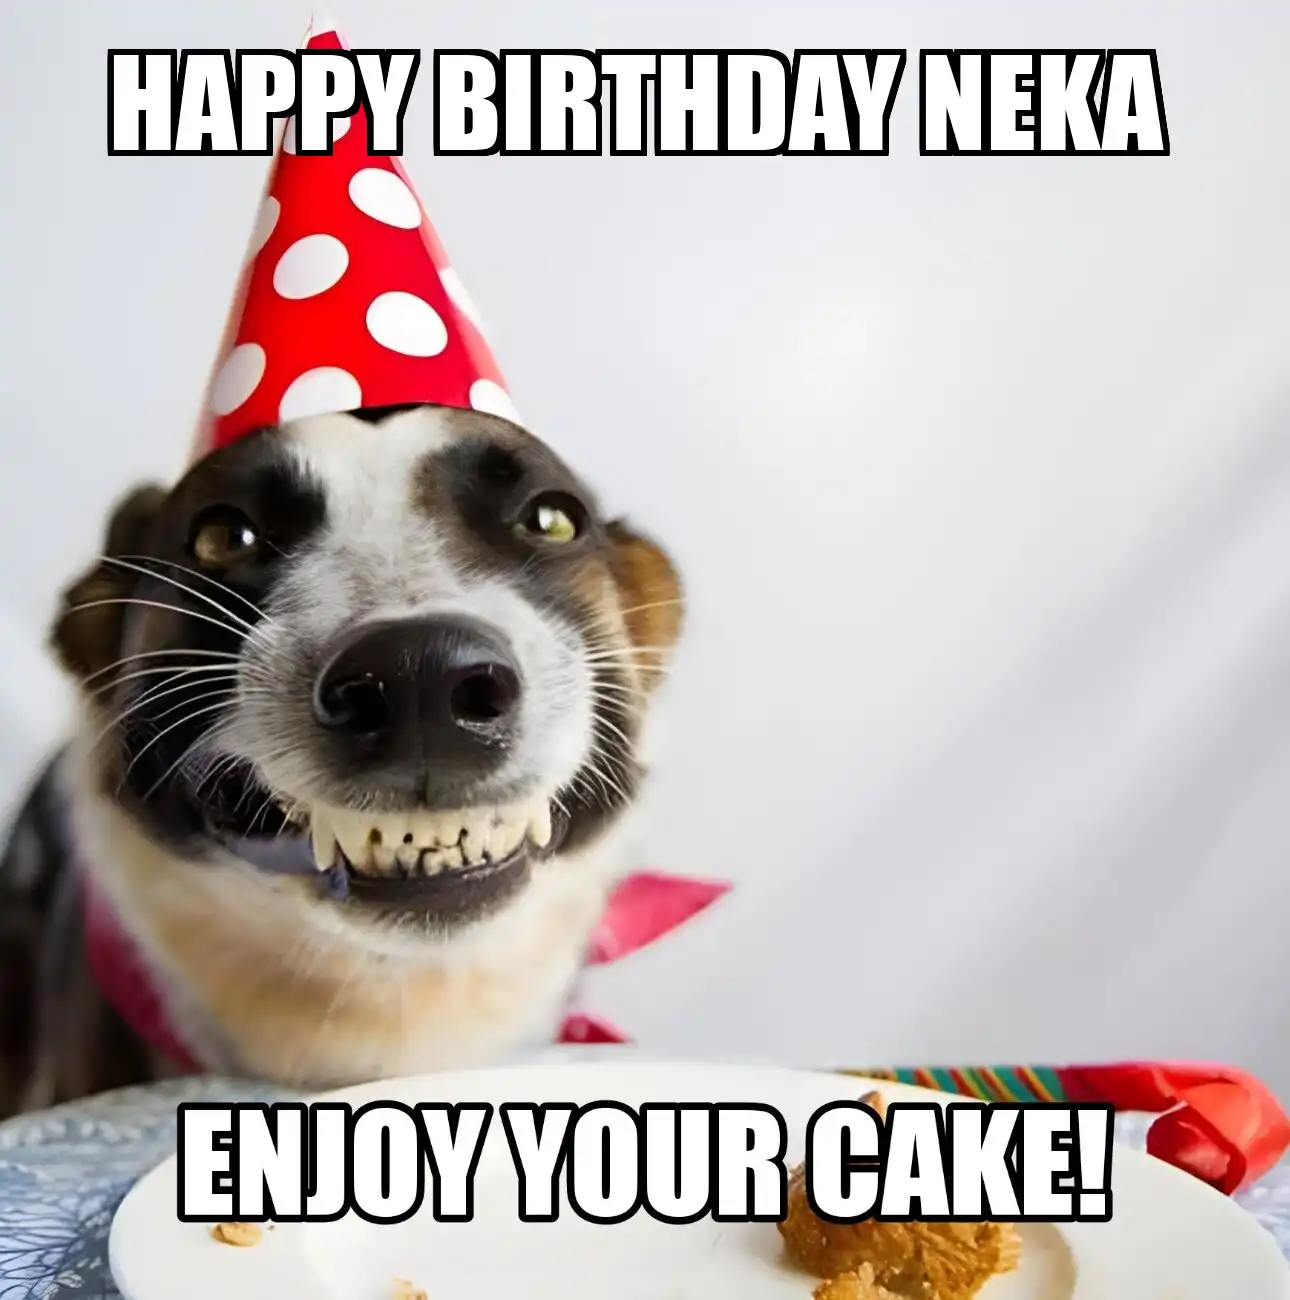 Happy Birthday Neka Enjoy Your Cake Dog Meme